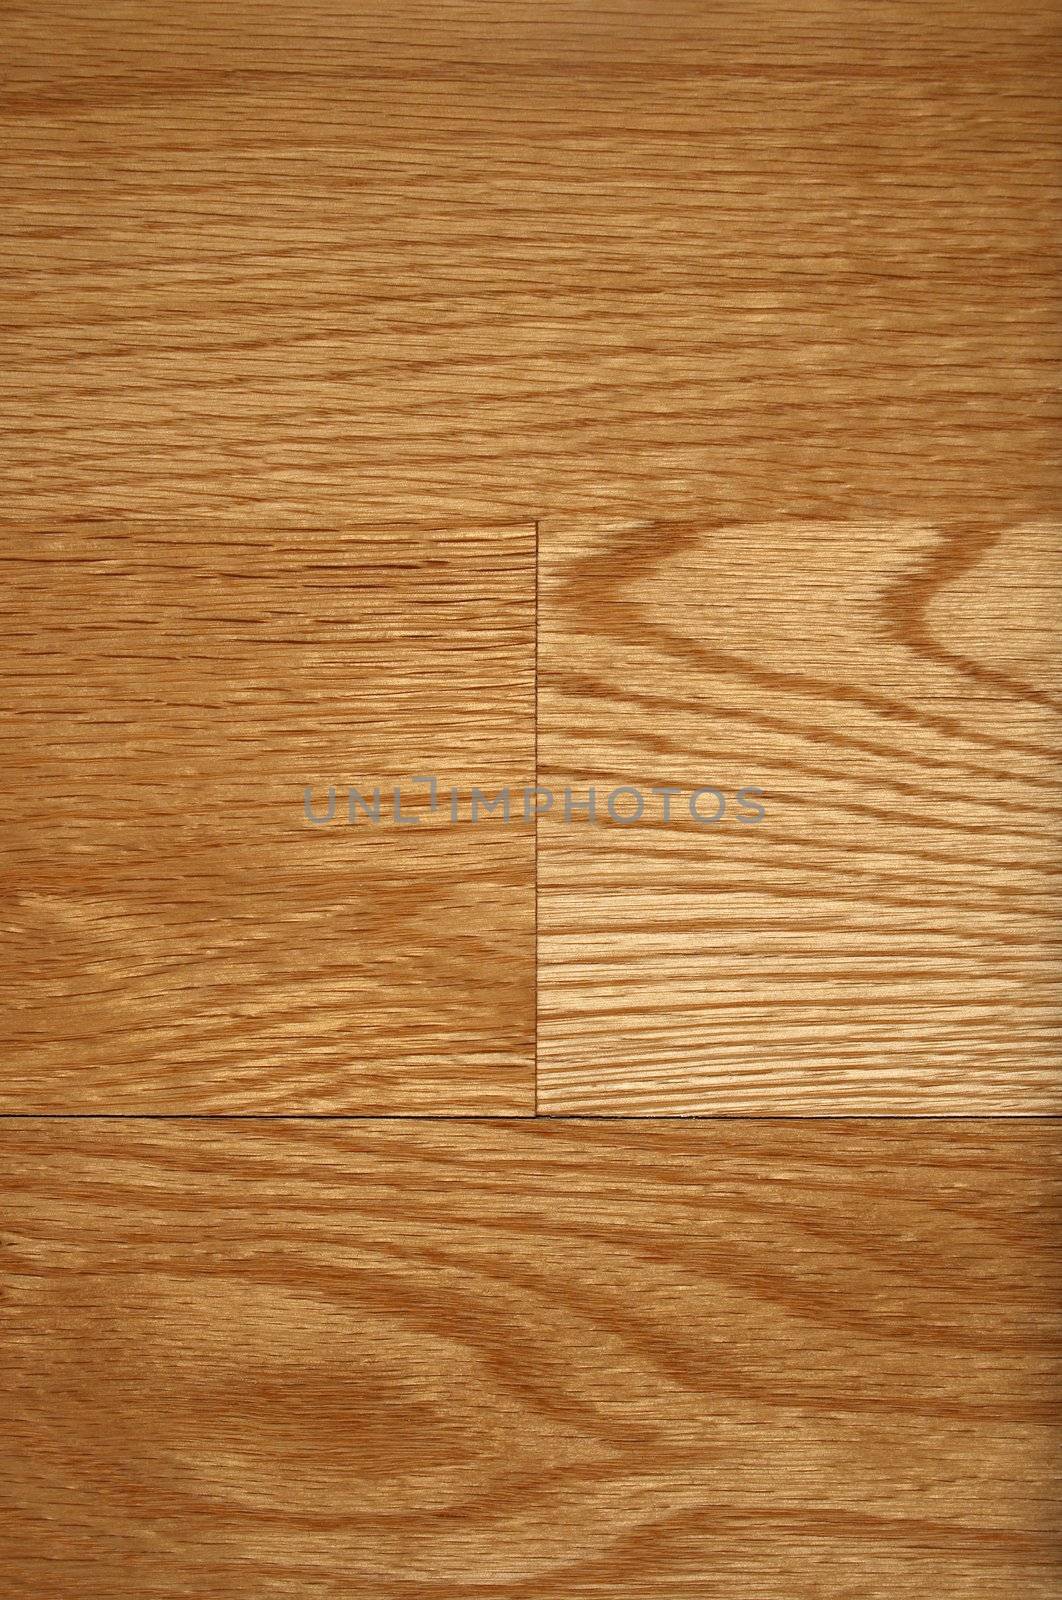 Hardwood floor texture by anikasalsera